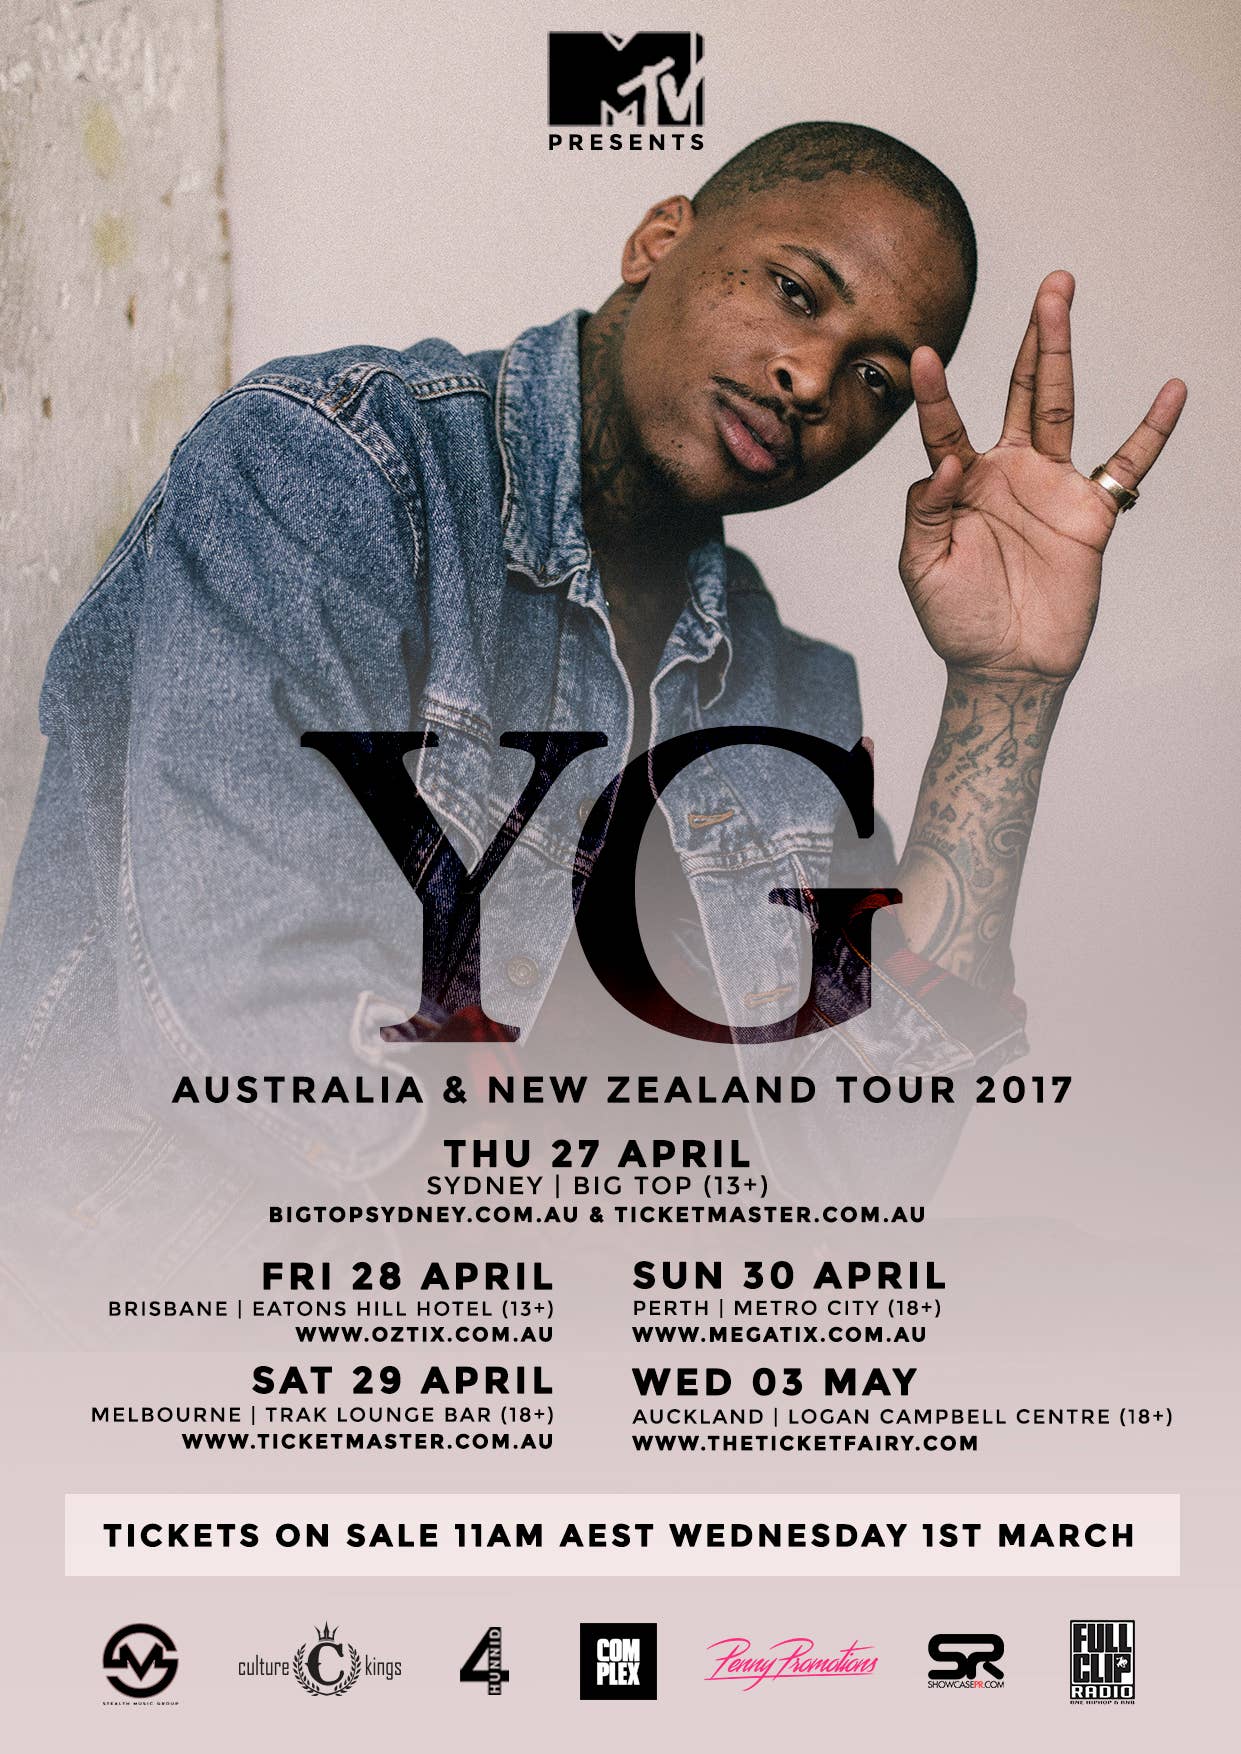 YG Australia & New Zealand tour dates 2017